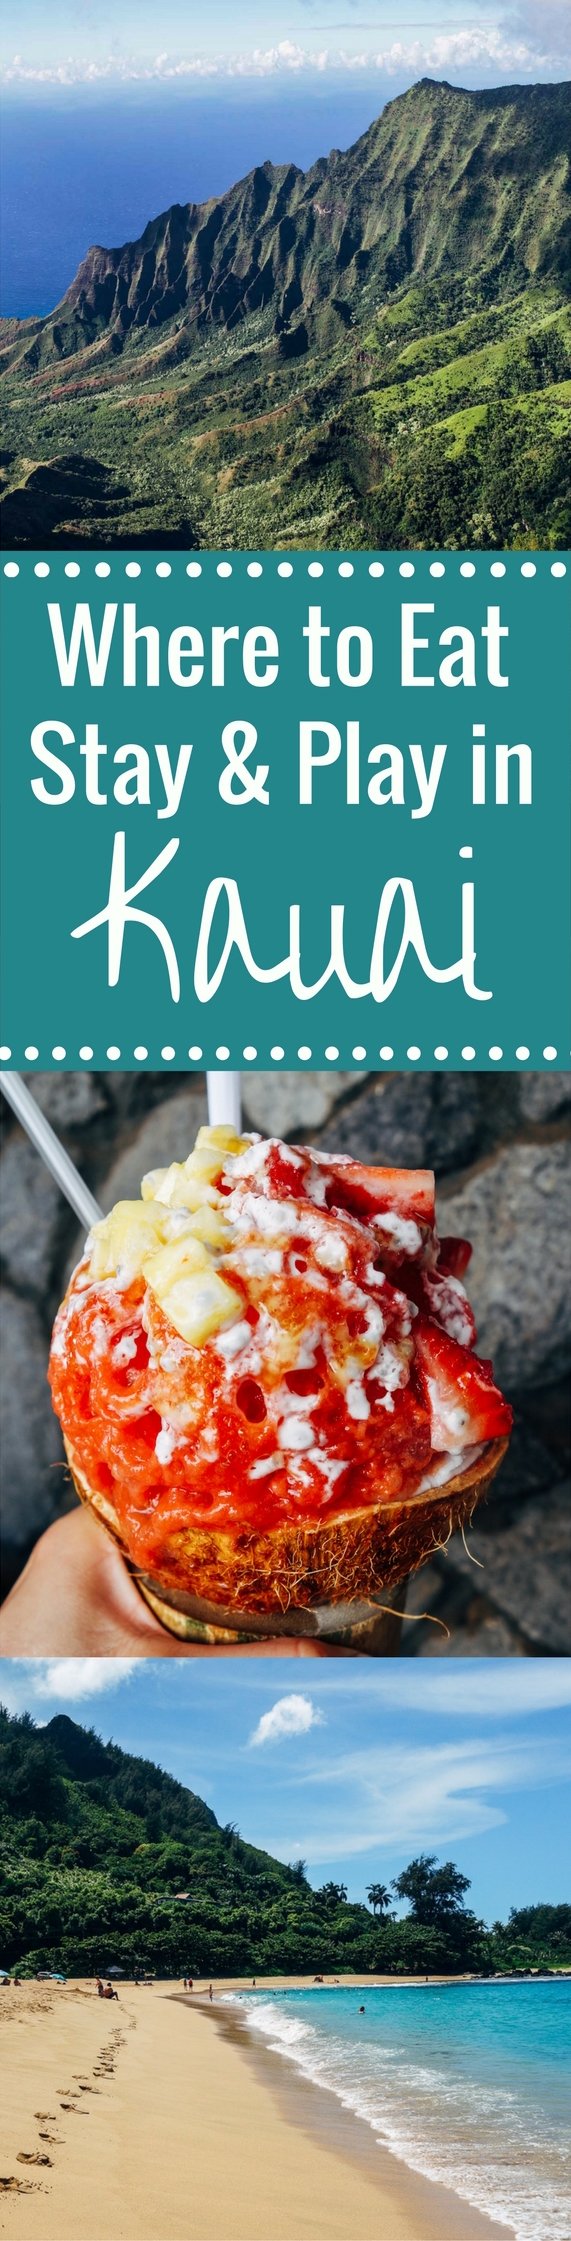 kauai-travel-guide